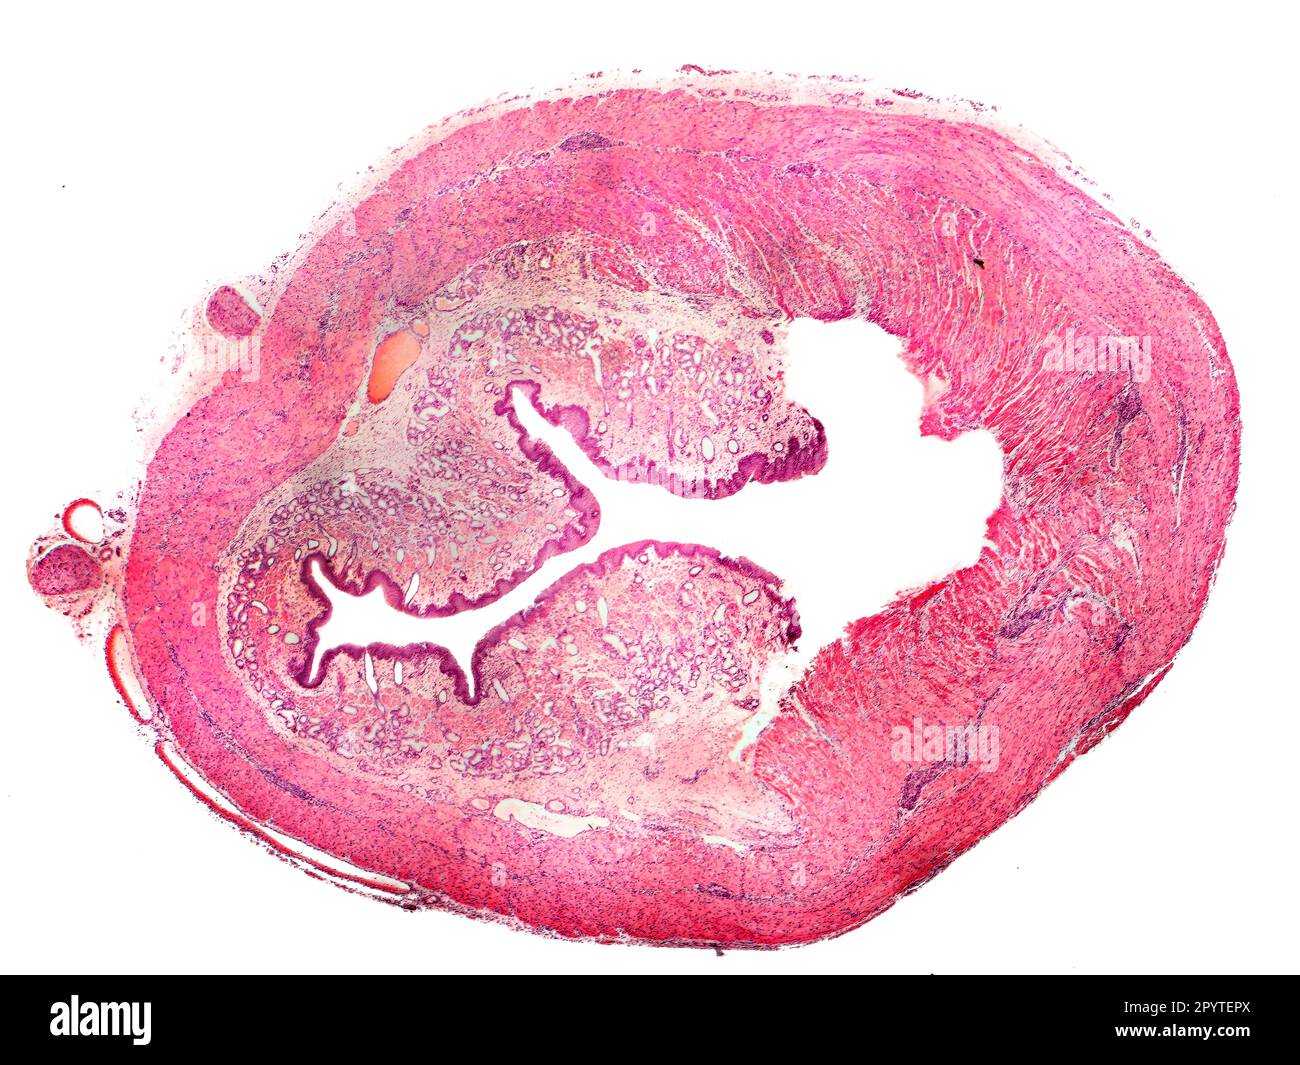 Sezione trasversale dell'esofago umano, isolata su sfondo bianco. Micrografia leggera Foto Stock